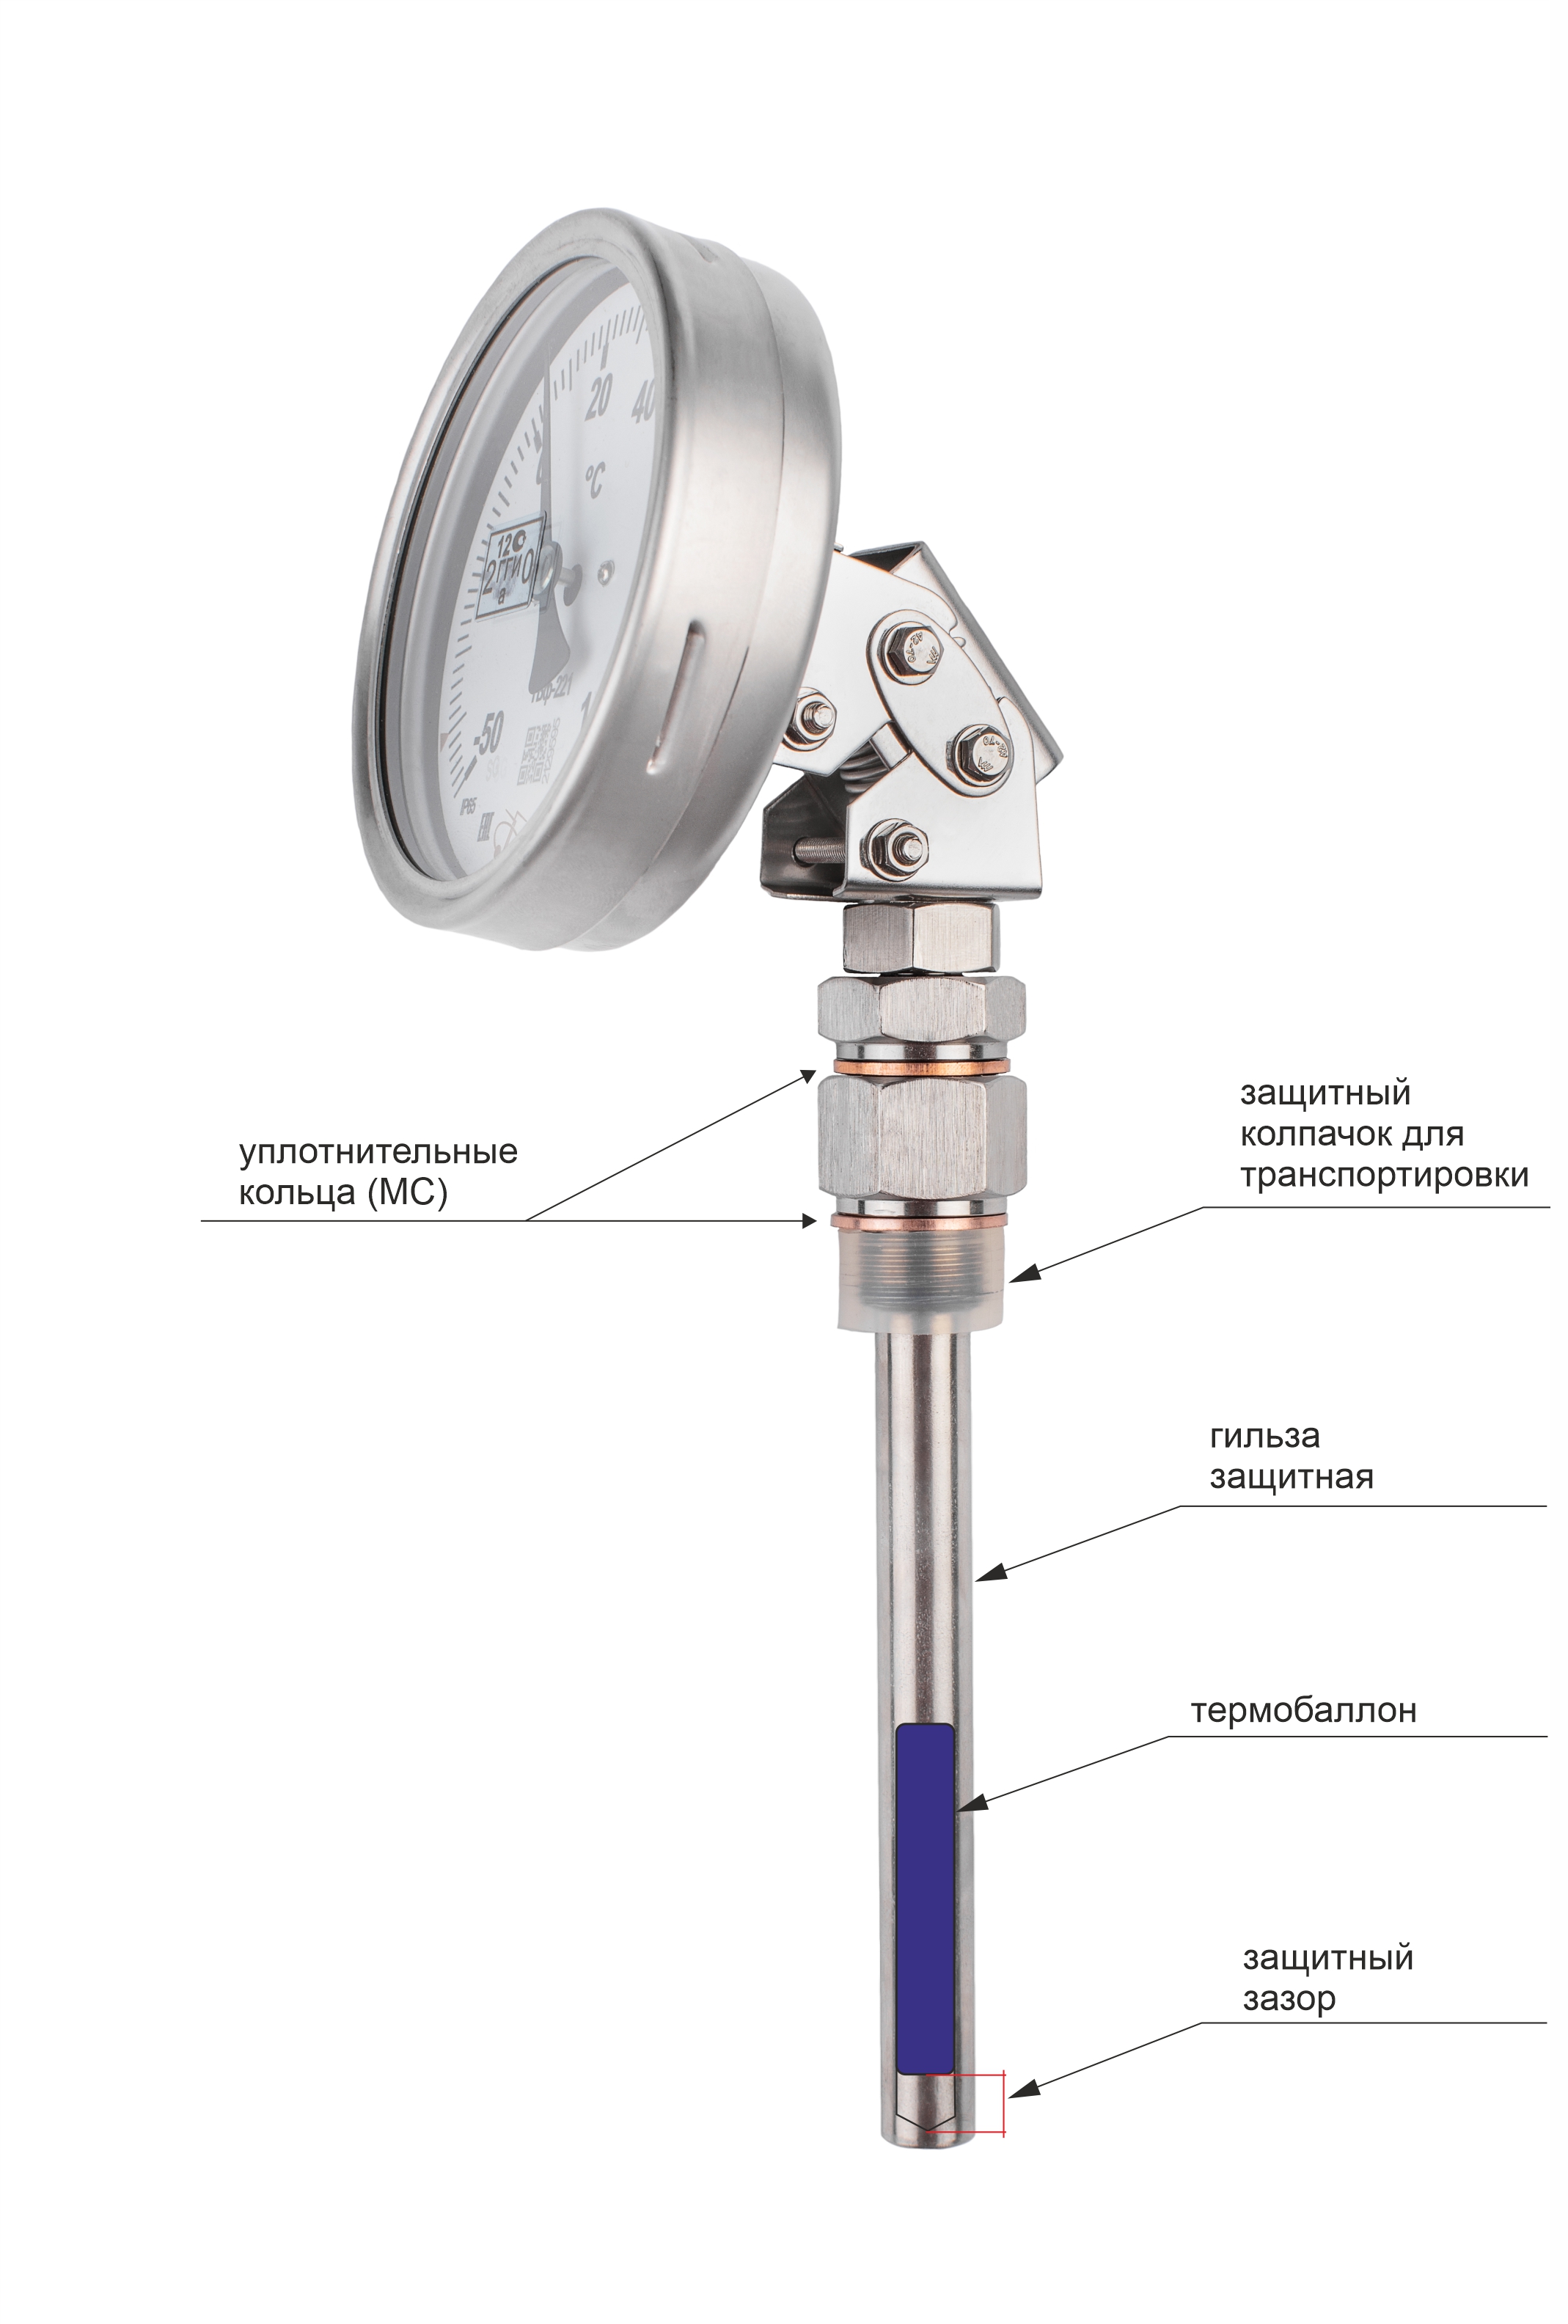 Термометры биметаллические коррозионностойкие ТБф-220 с возможностью гидрозаполнения (Диаметр: 80 мм, 100 мм, 160 мм)